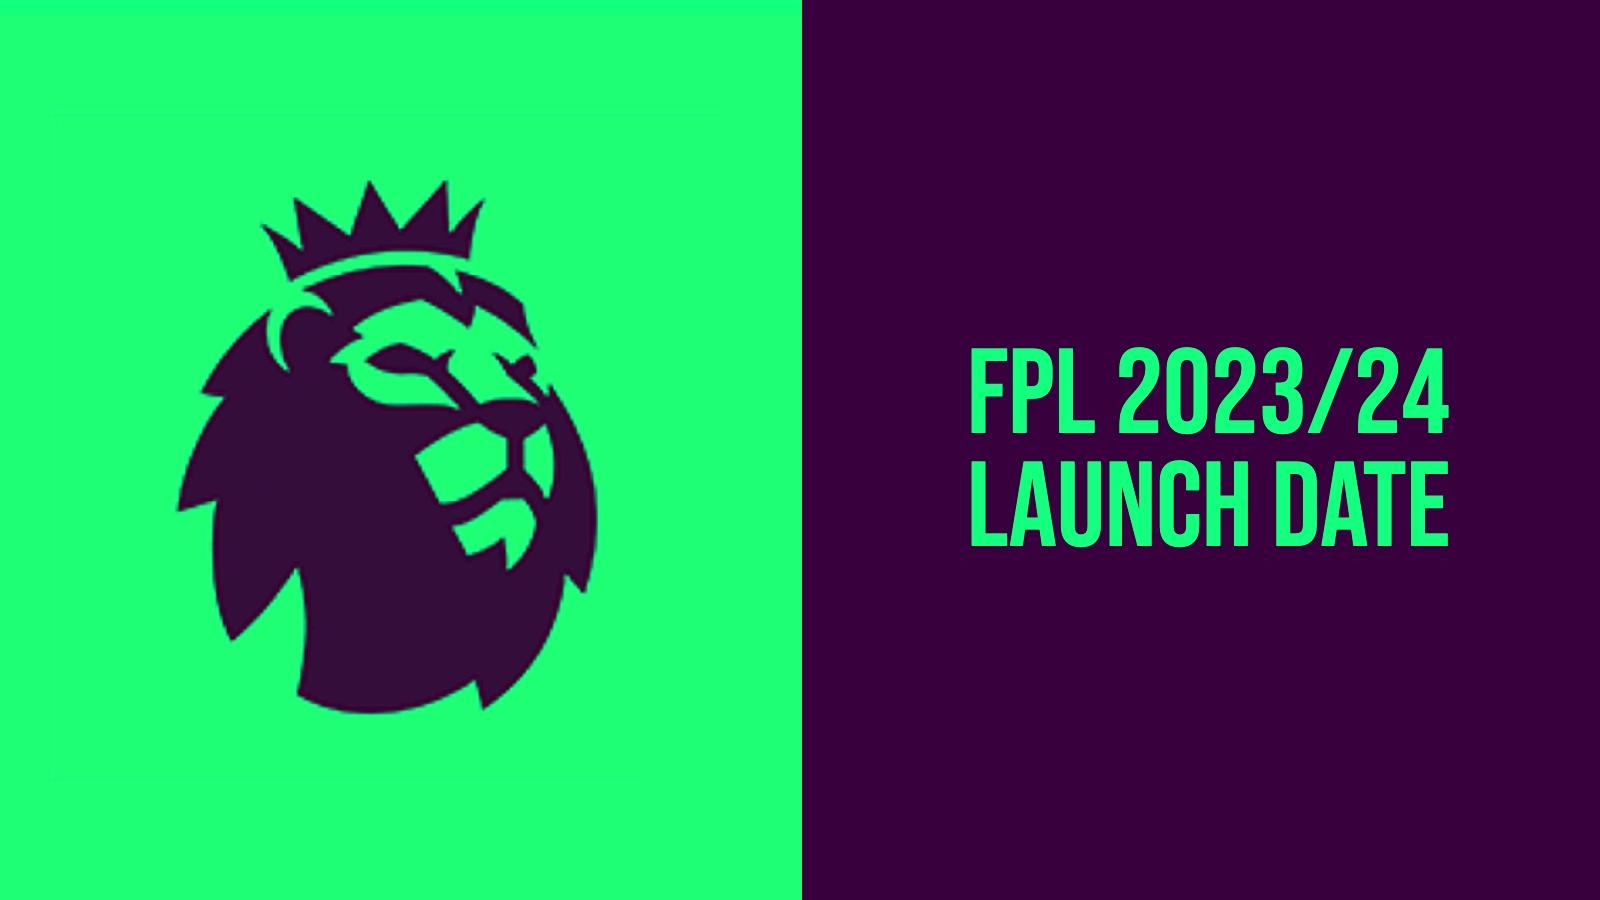 When does Fantasy Premier League 2023/24 launch? Dexerto